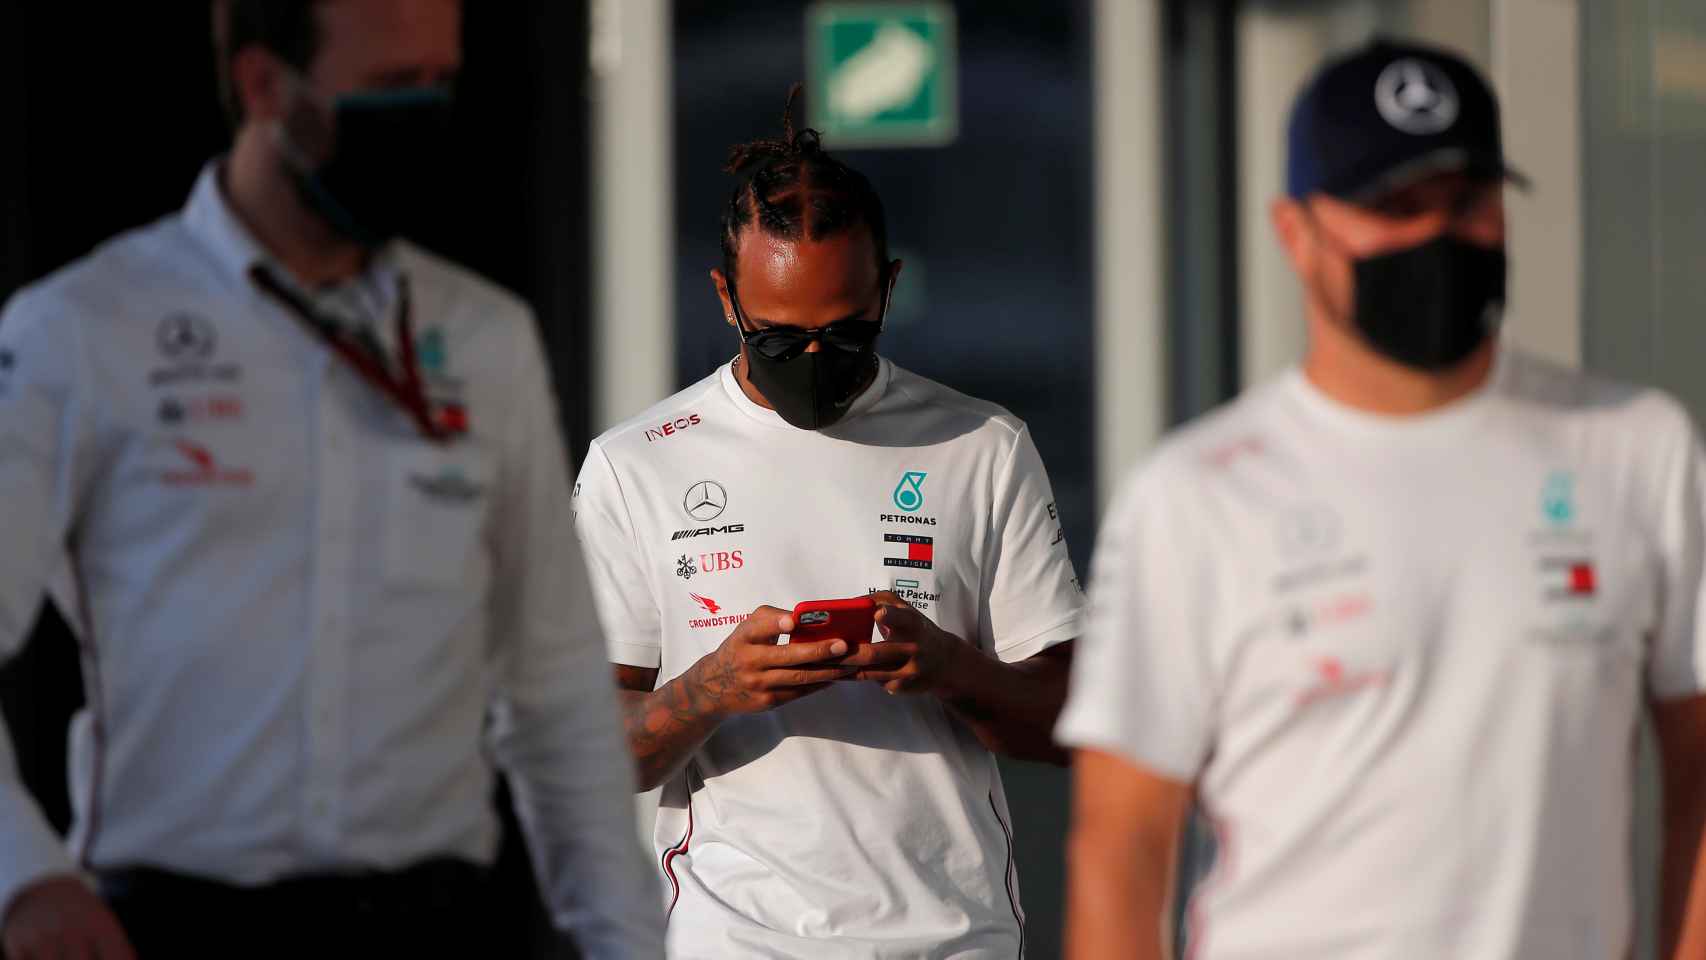 Hamilton junto a gente del equipo Mercedes en el paddock